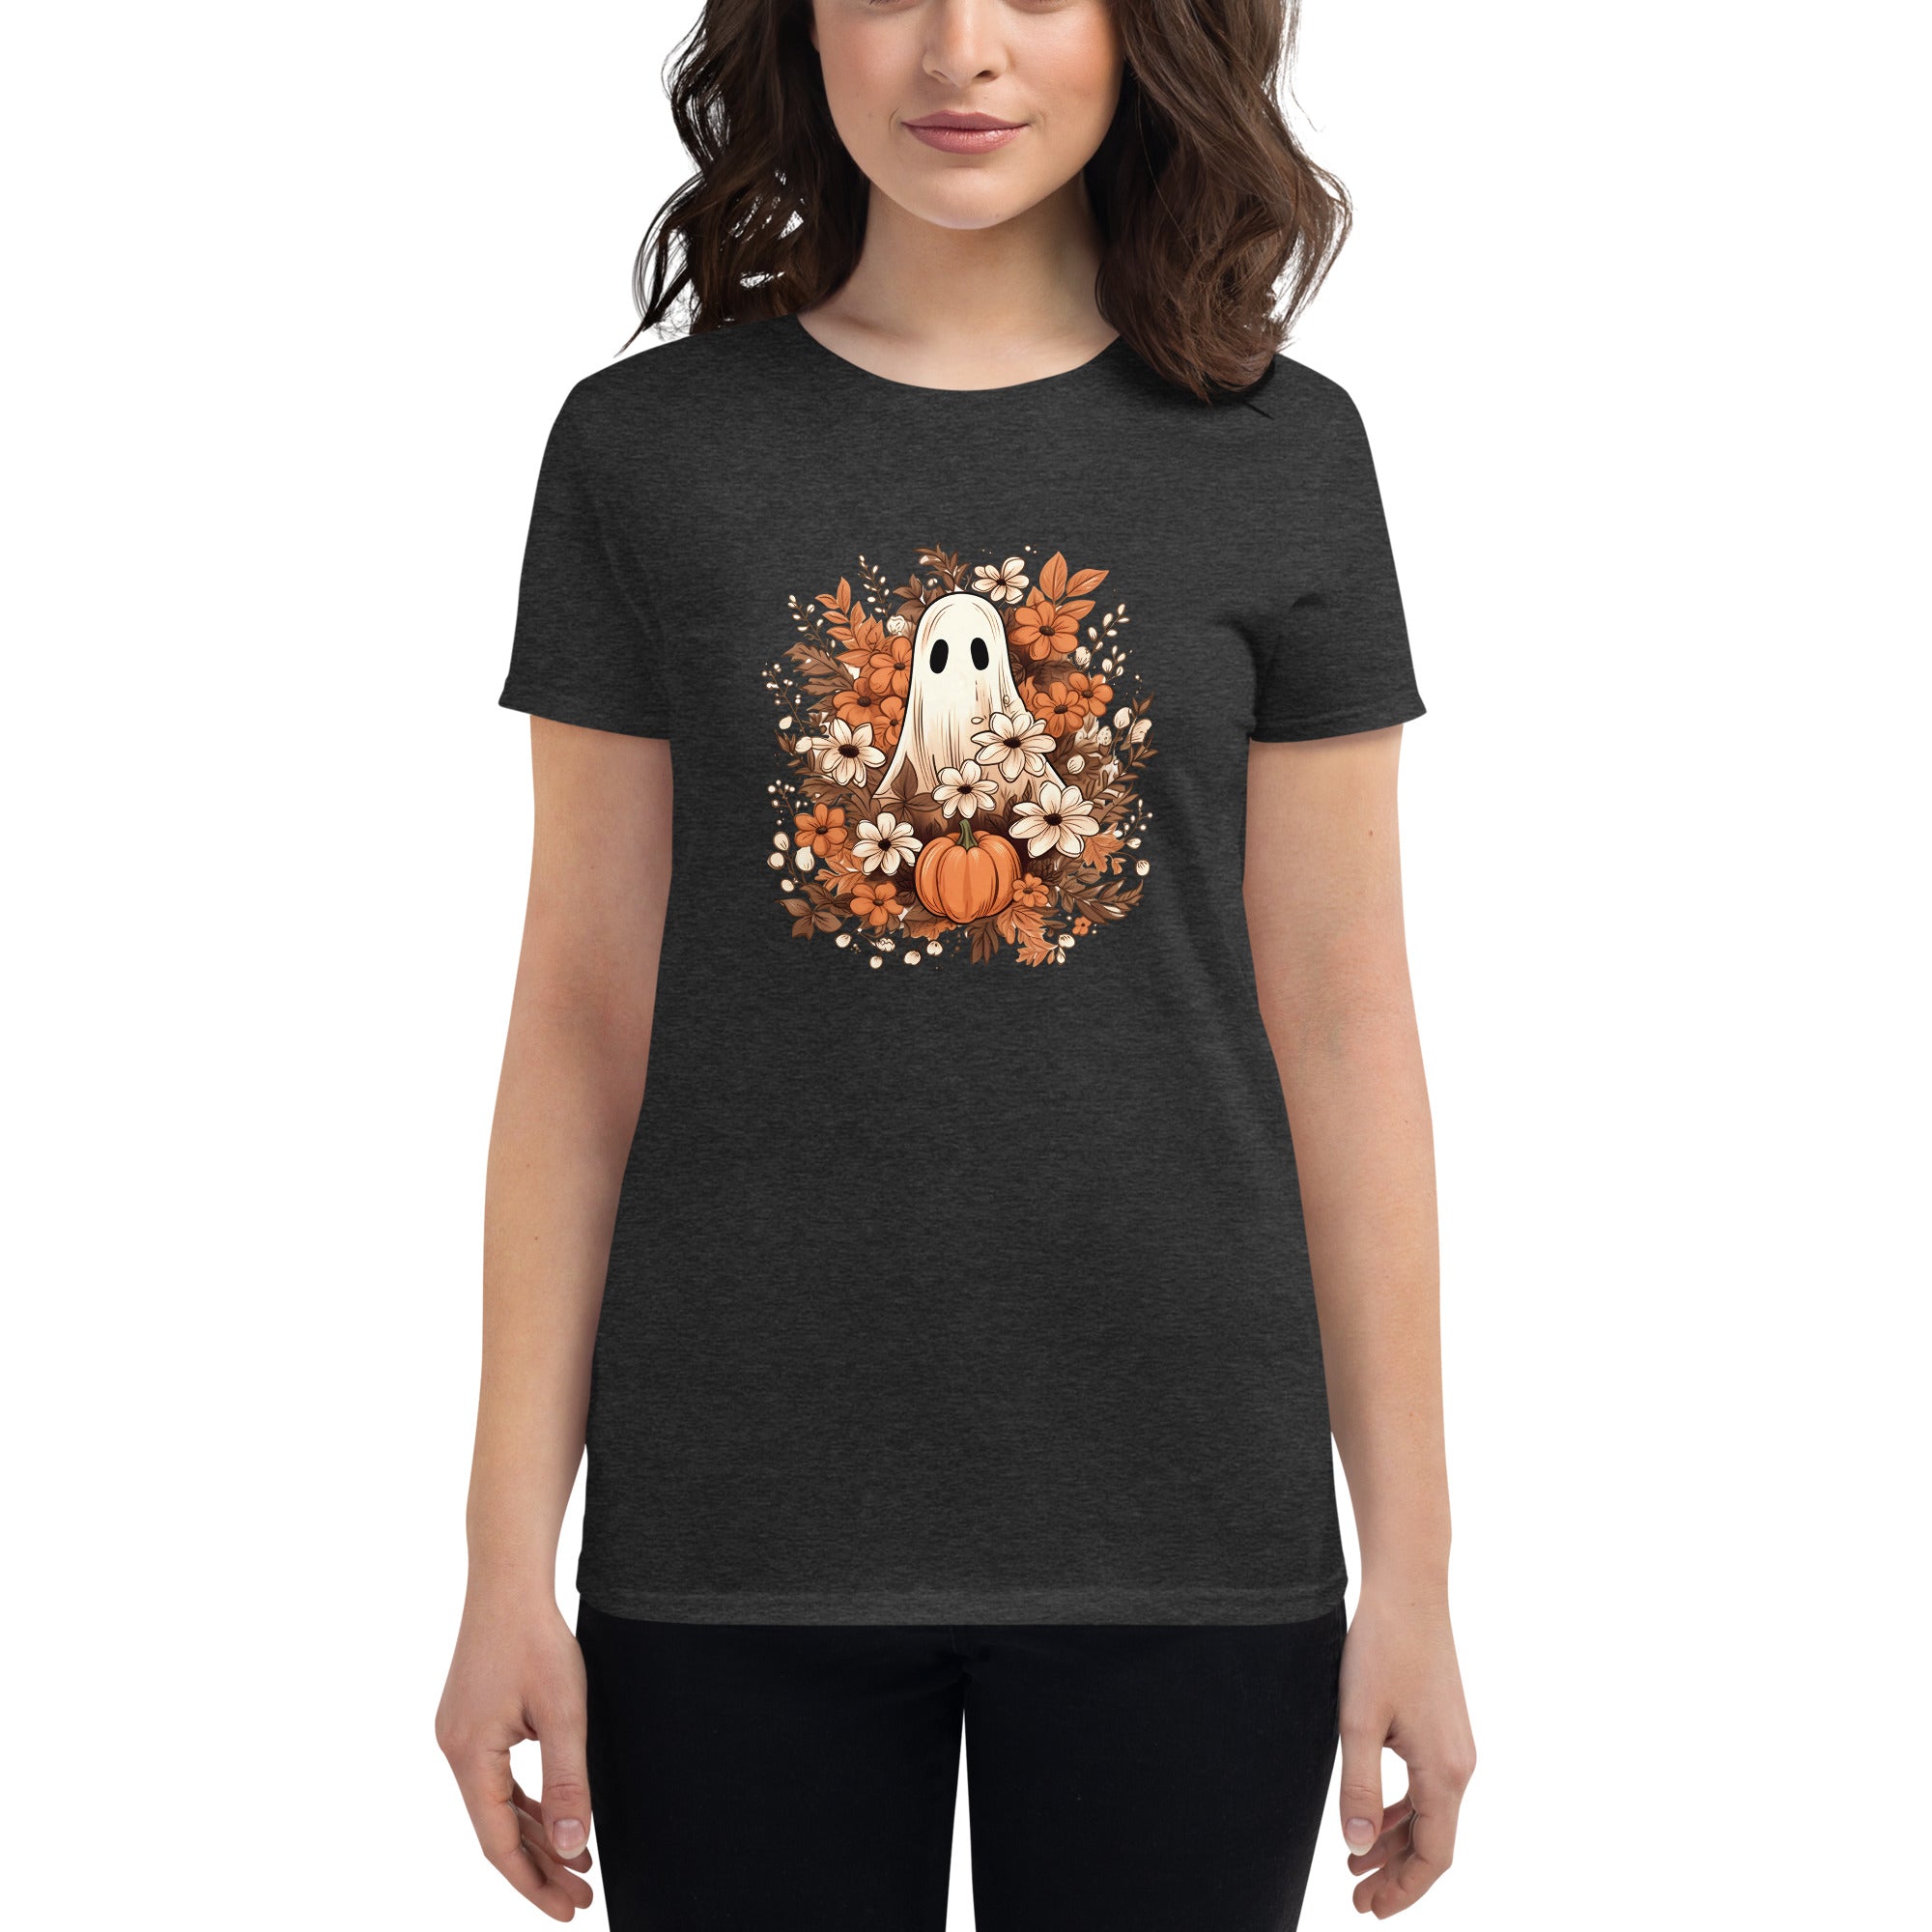 Autumn Ghost Halloween T Shirt for Women